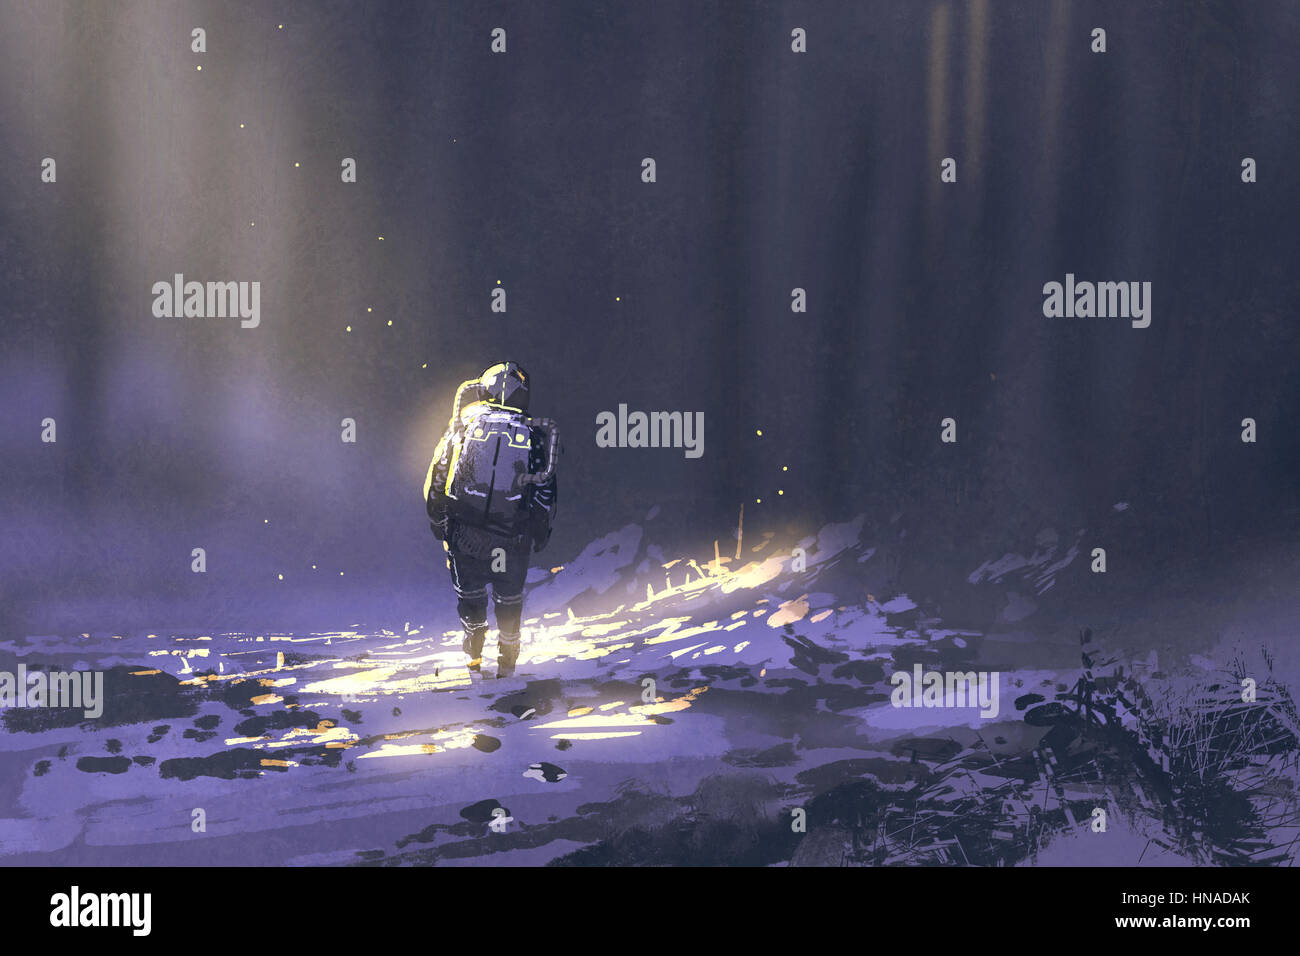 Solo el astronauta caminando en la nieve, ilustración pintura Foto de stock